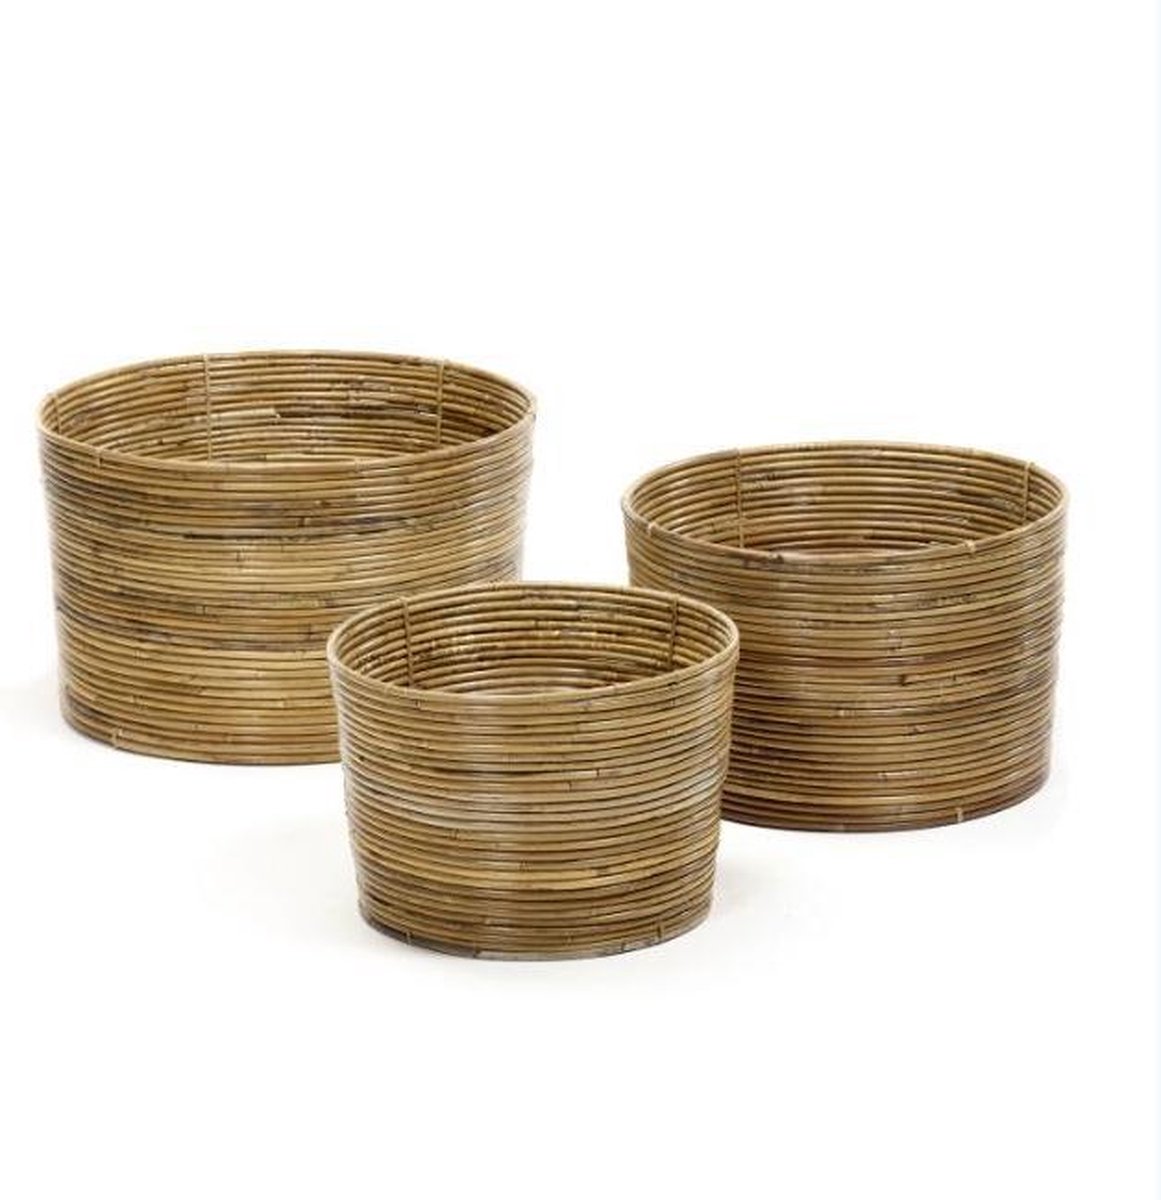 Maison Péderrey Rieten mand-Cylinder mand-Ringen mand Bamboe-Riet Bruin-Beige-Naturel-Grijs D 43 cm H 27 cm (Mand rechts achter op foto)